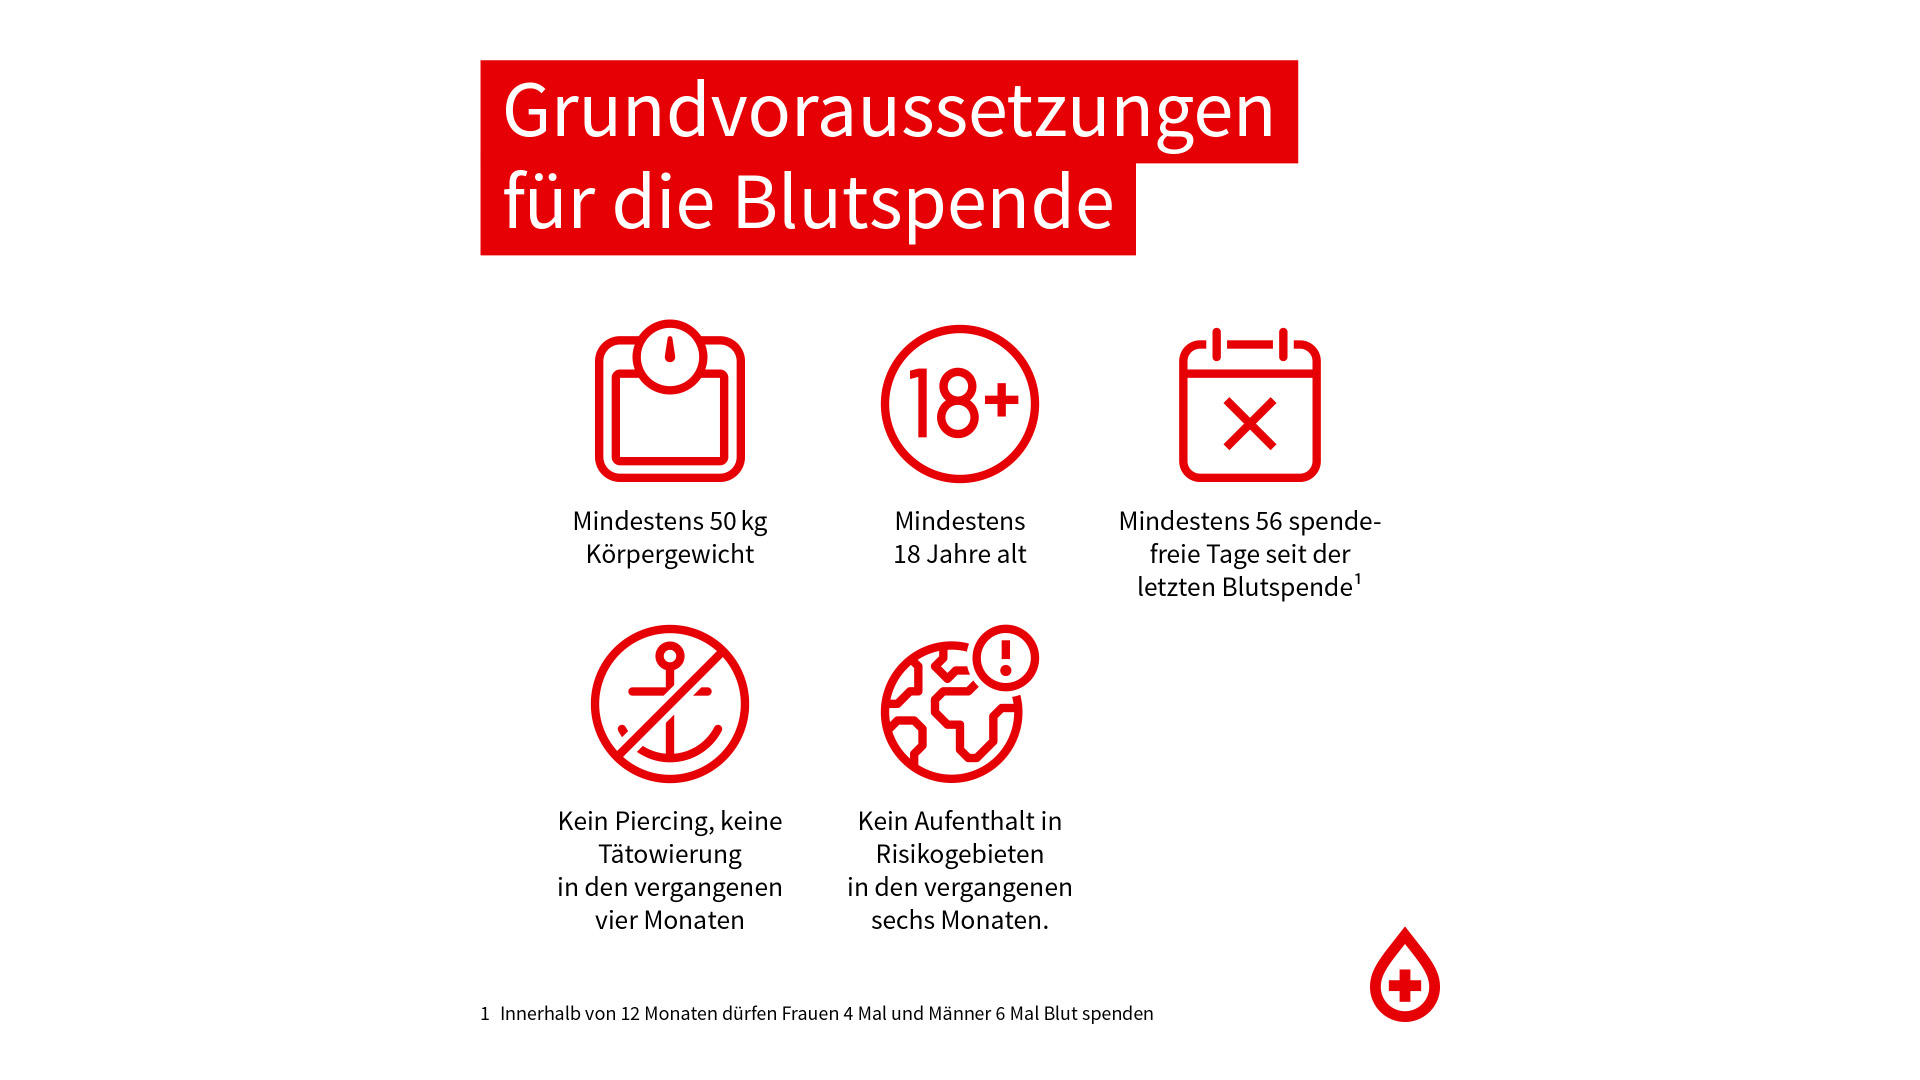 Grundvoraussetzung | Bildquelle: Blutspendedienst Bayern